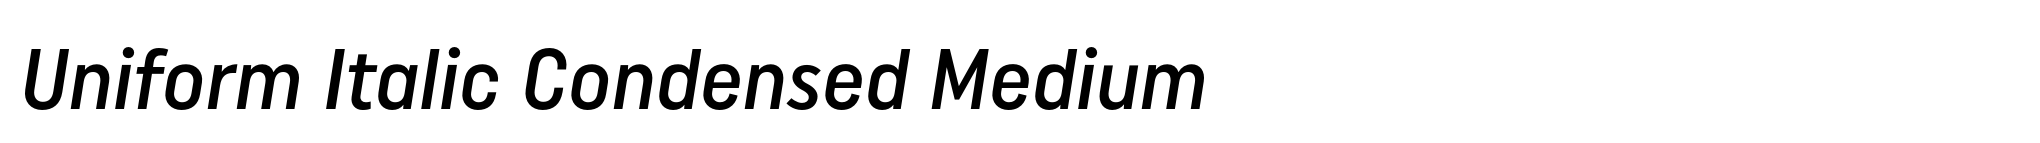 Uniform Italic Condensed Medium image